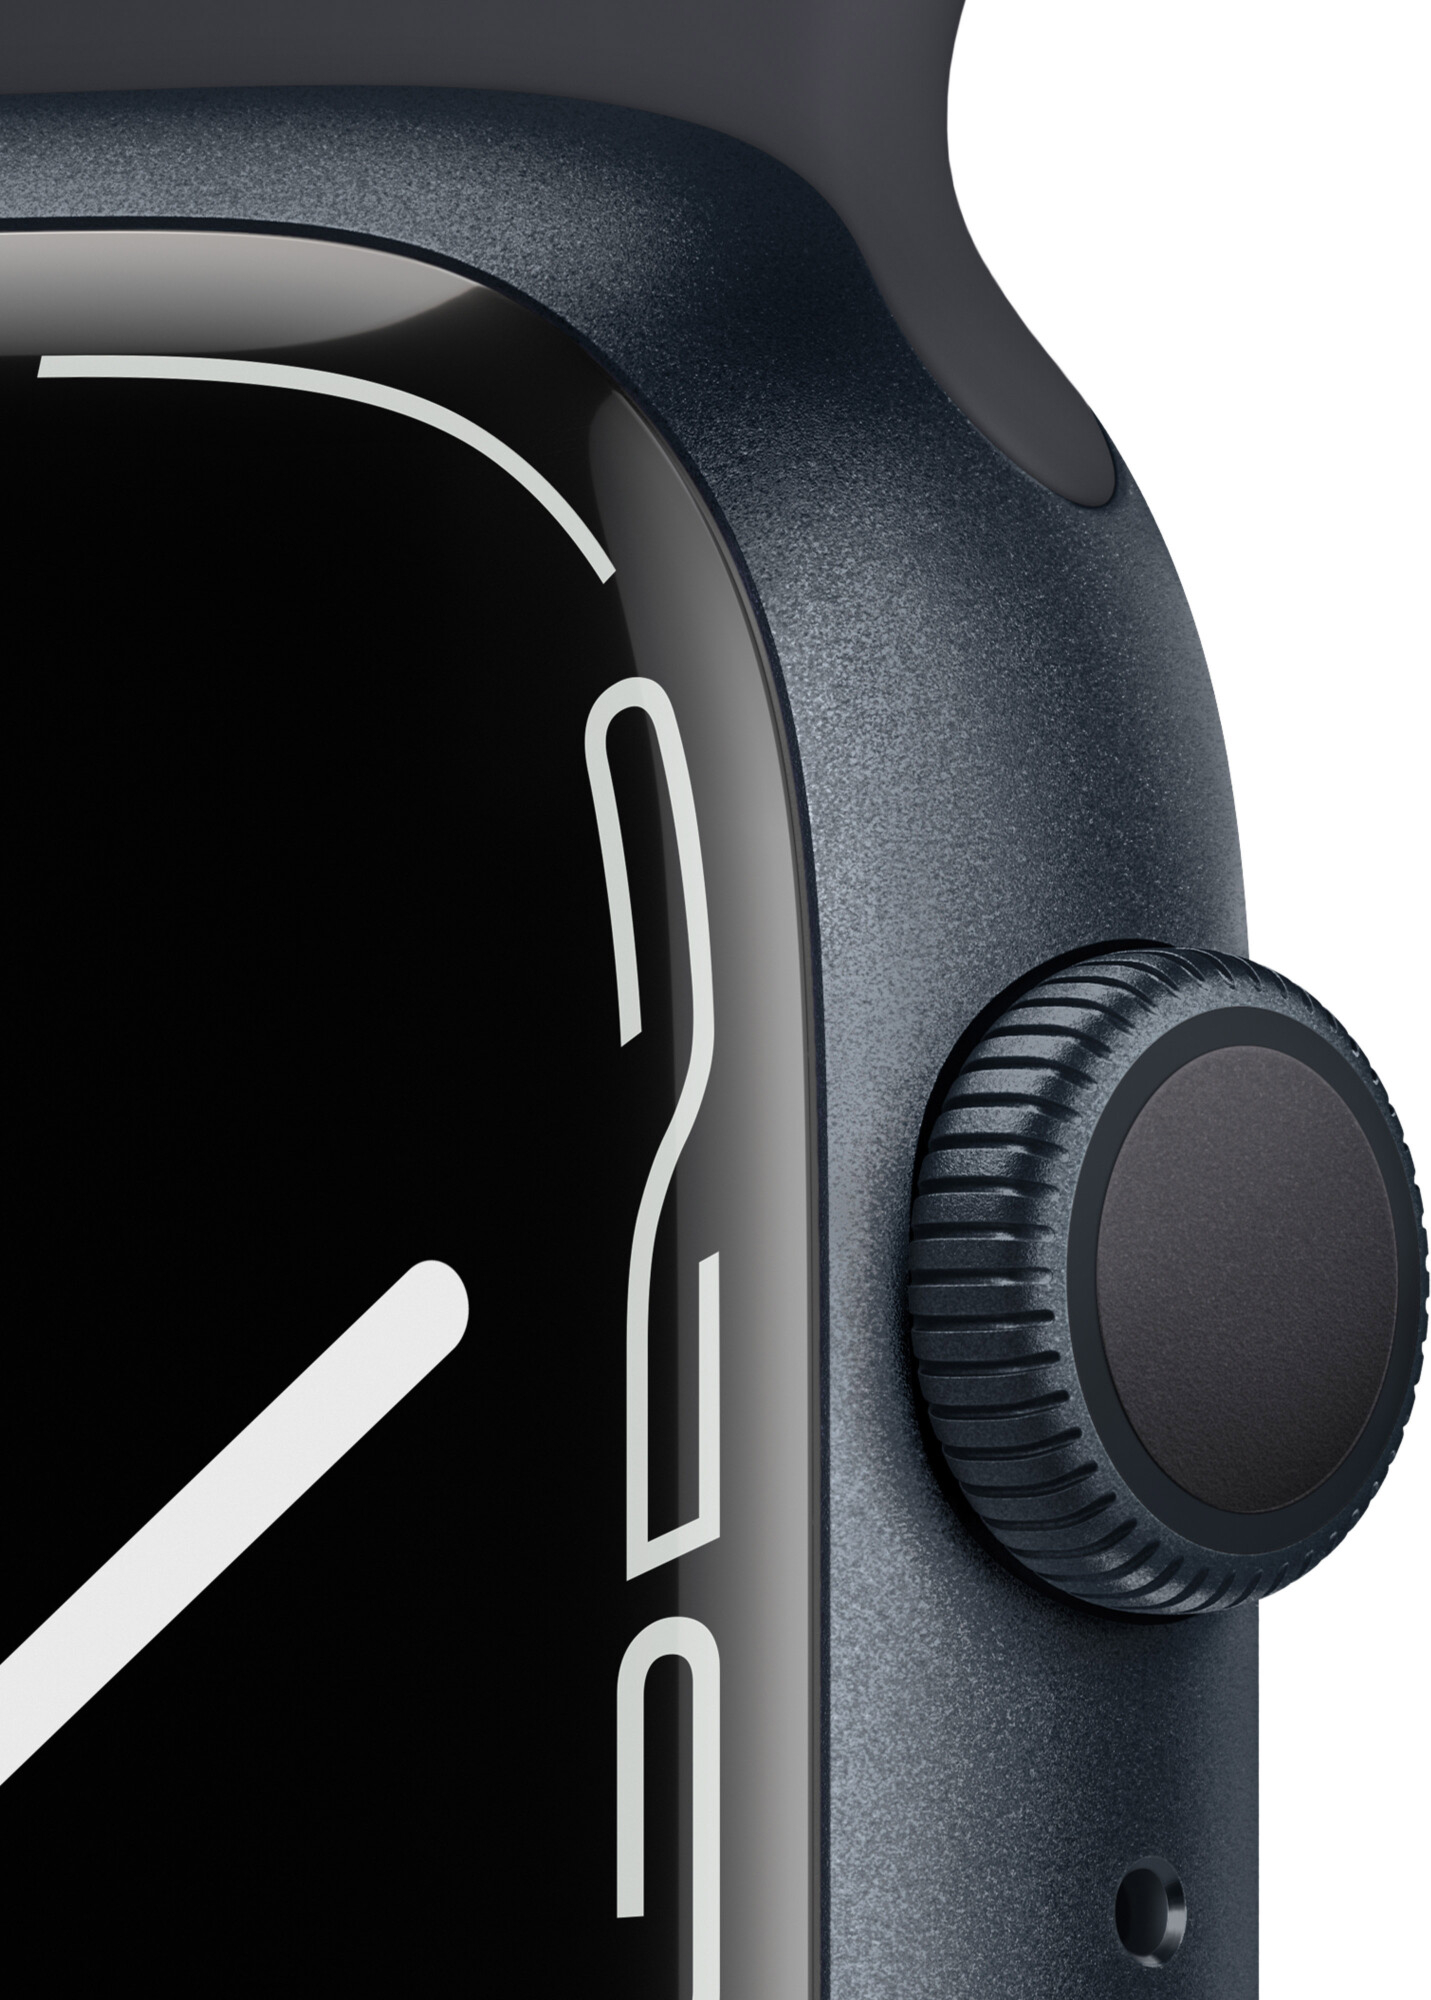 Умные часы Apple Watch Series 7, 45mm Темная ночь